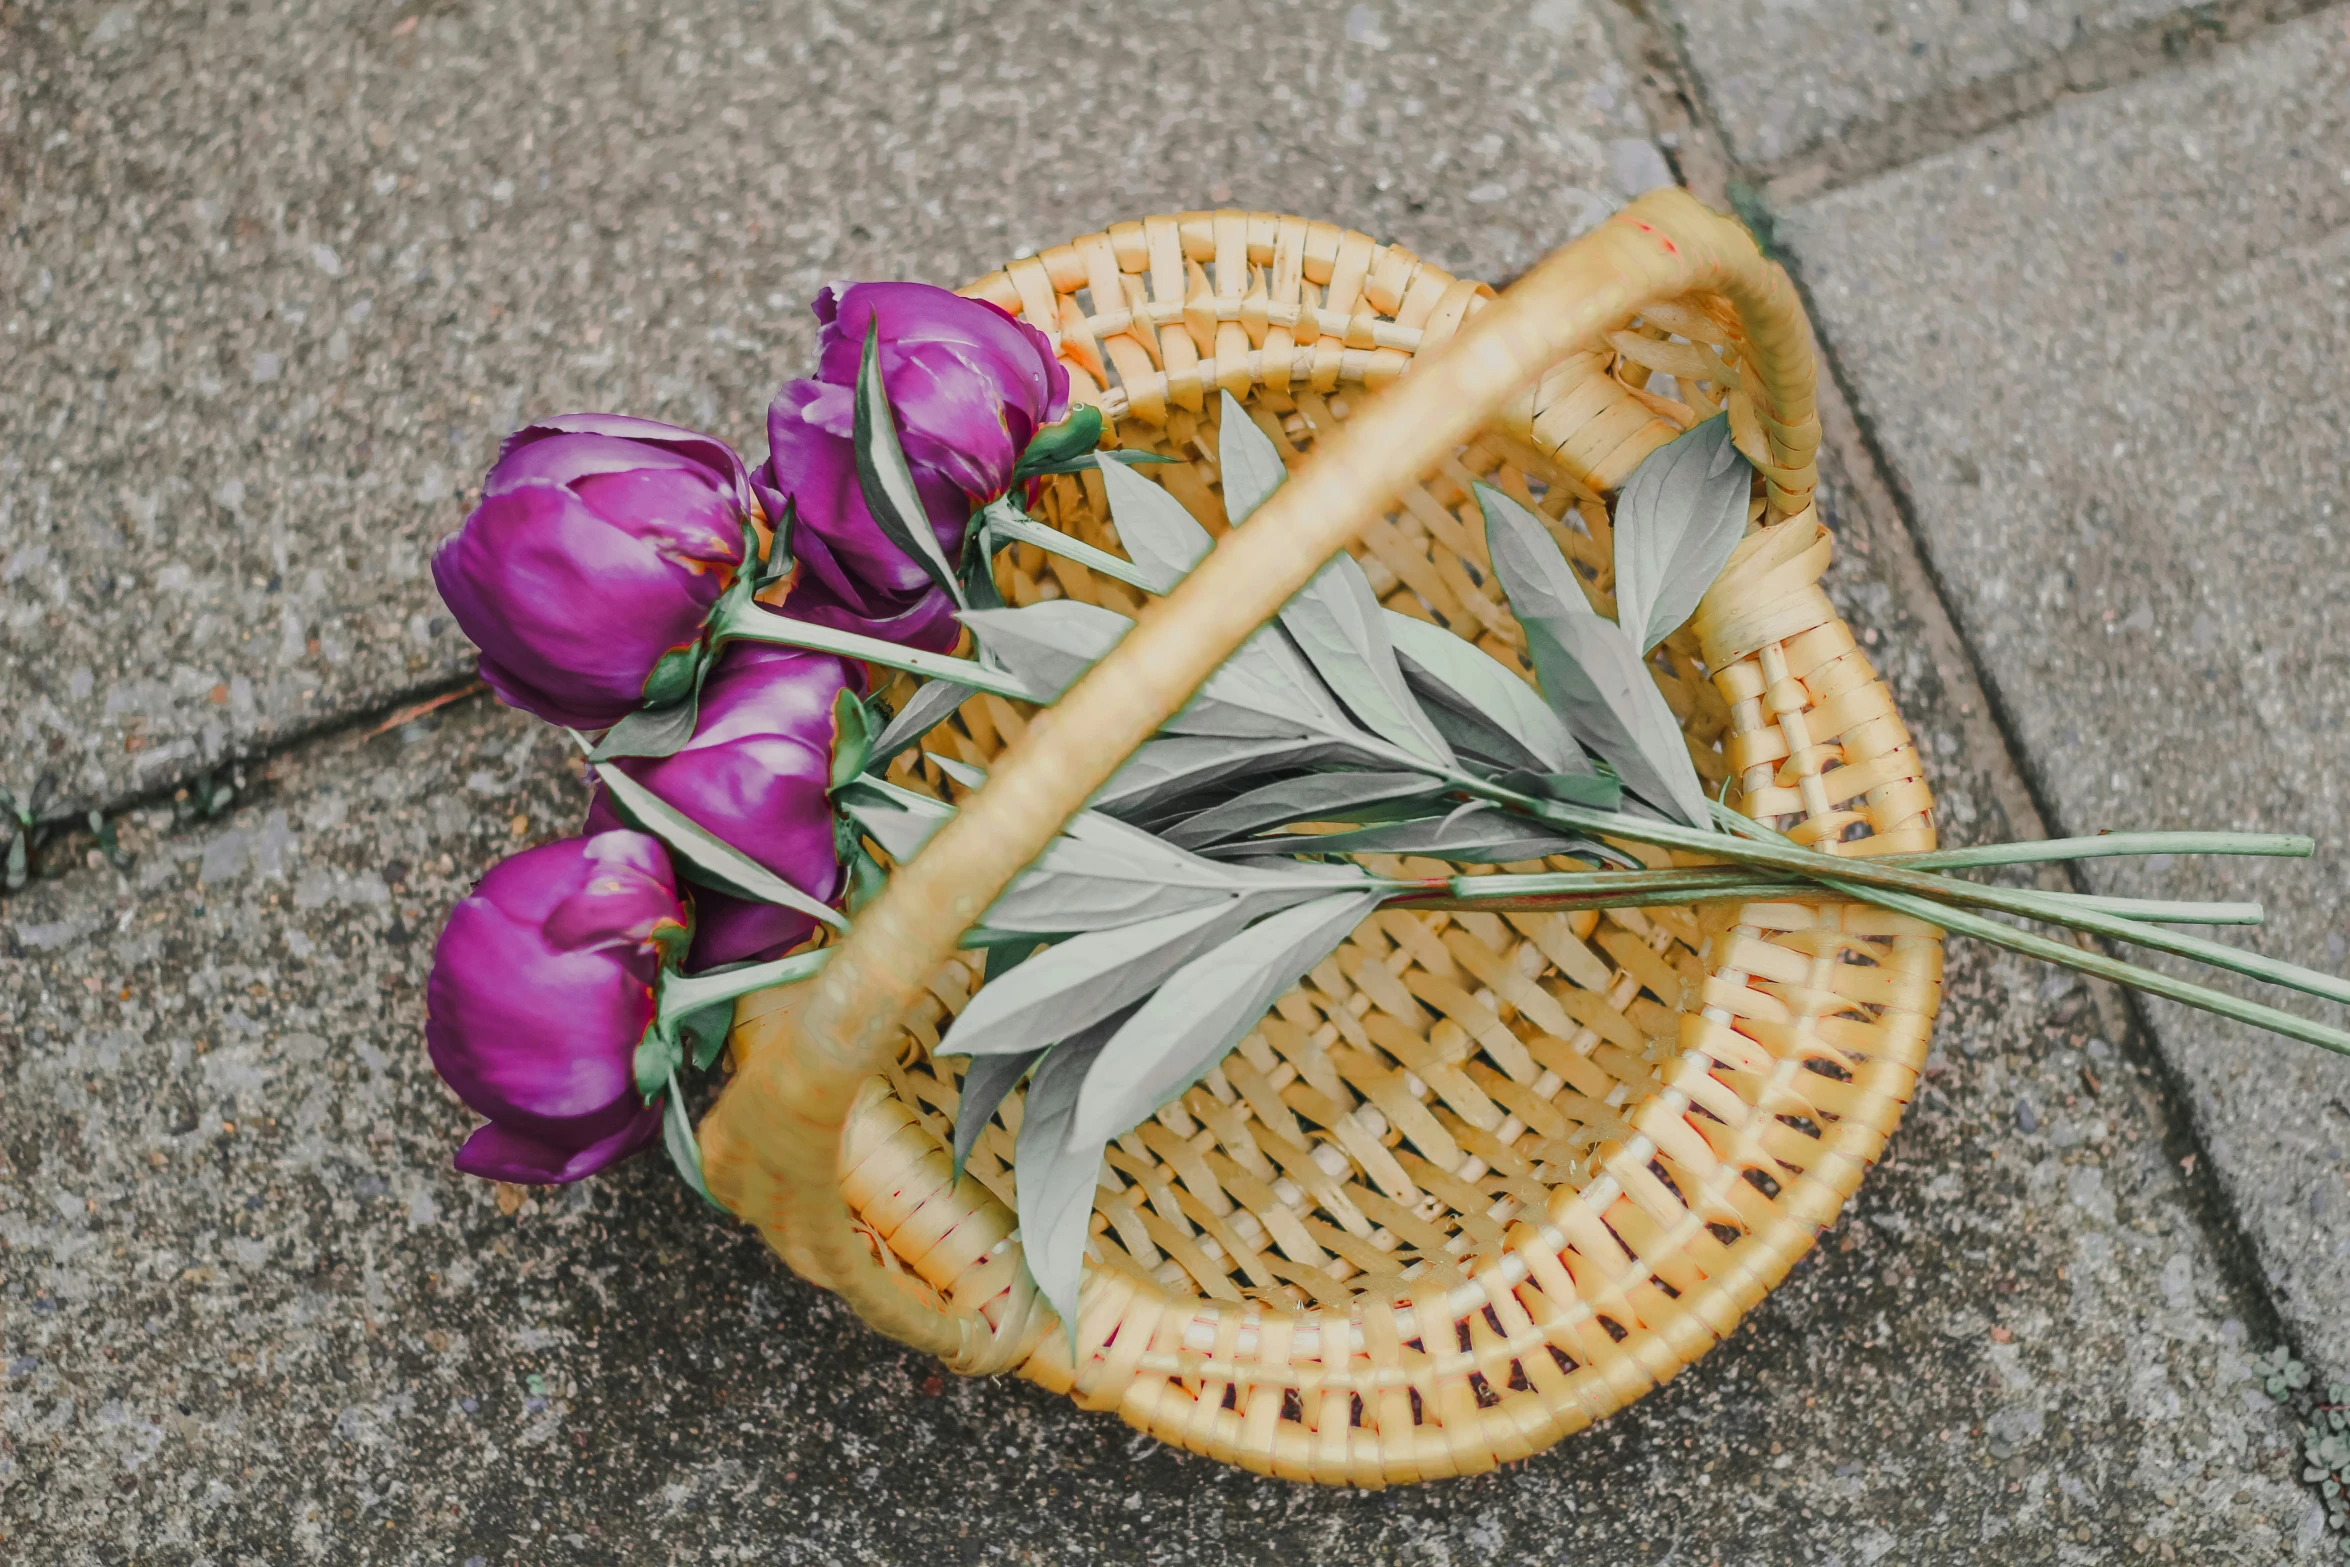 purple flowers are on the sidewalk, placed in a wicker basket